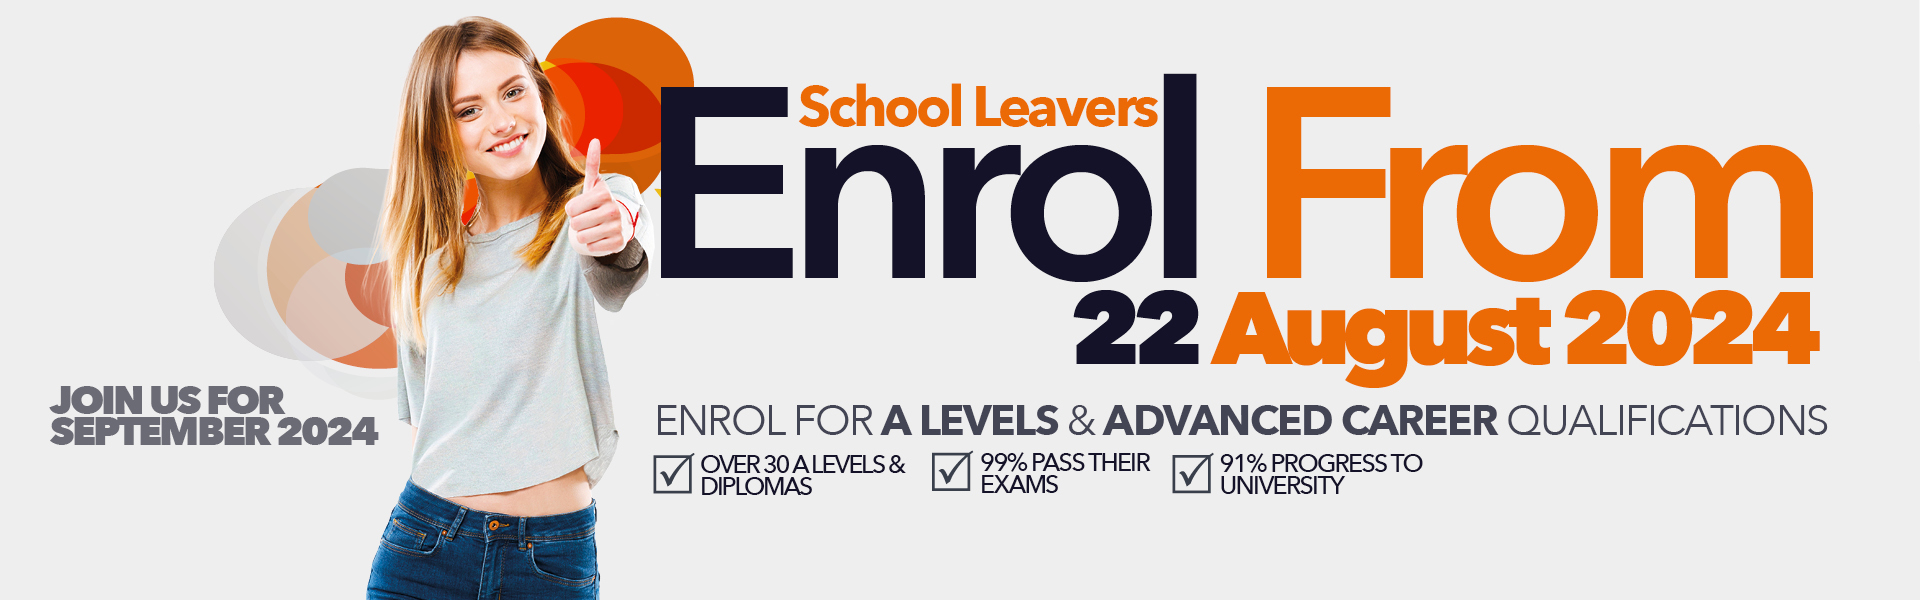 School Leavers Enrol from 22 August 2024